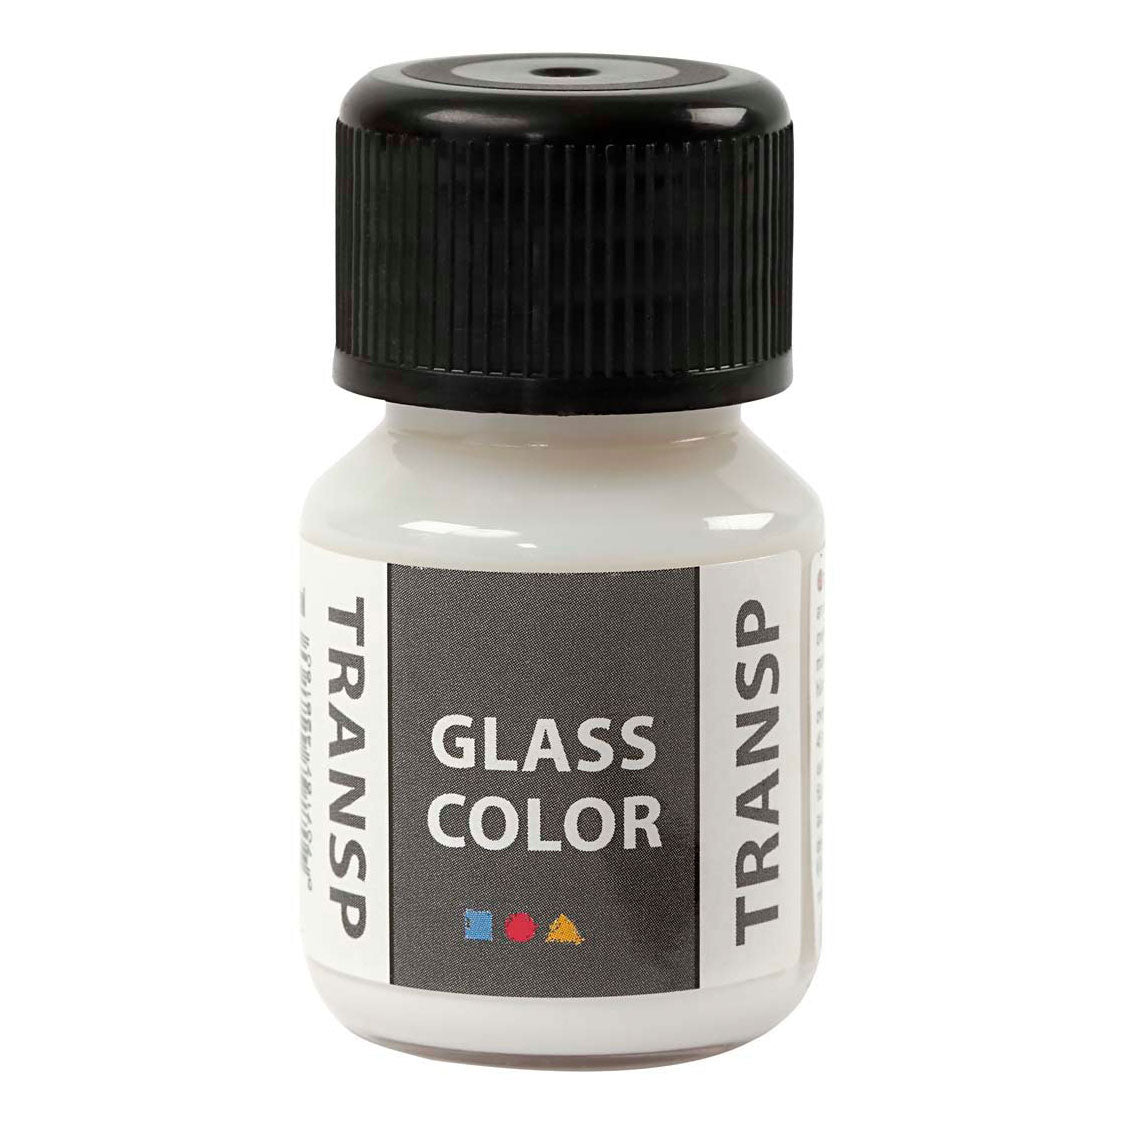 Creativ Company Glass Color Pintura Transparente Blanca, 30ml